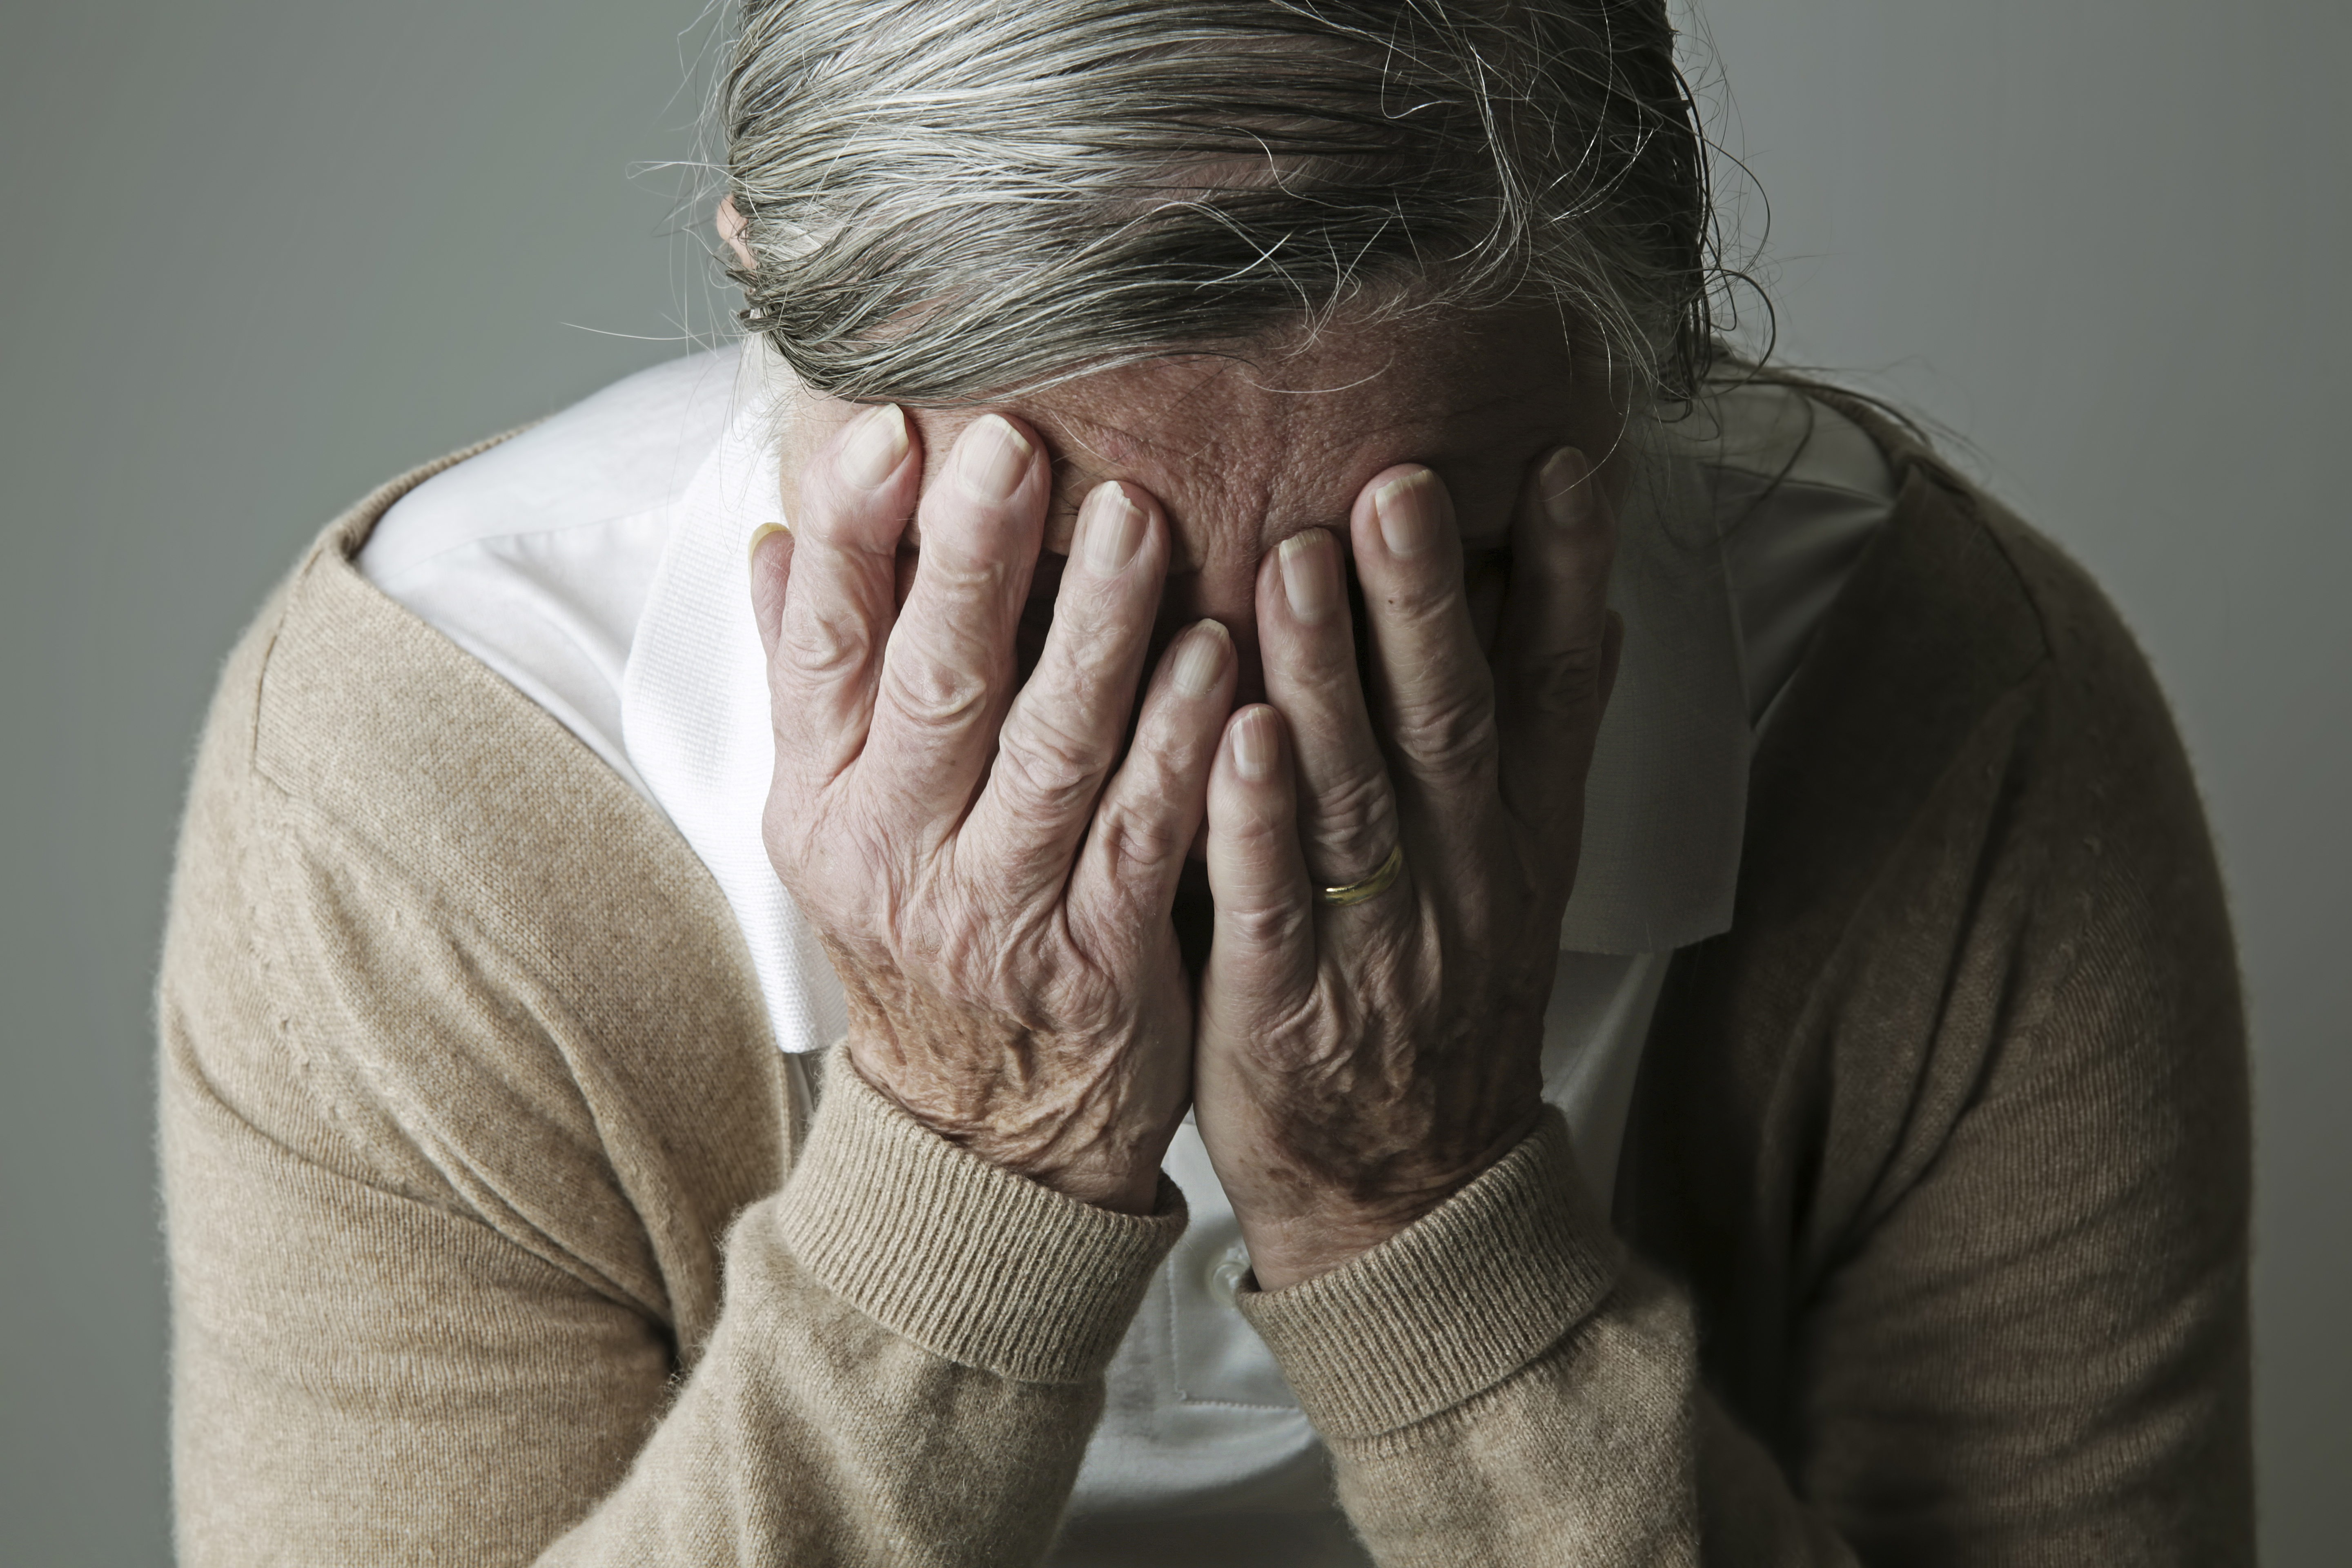 Лечение депрессии у пожилых